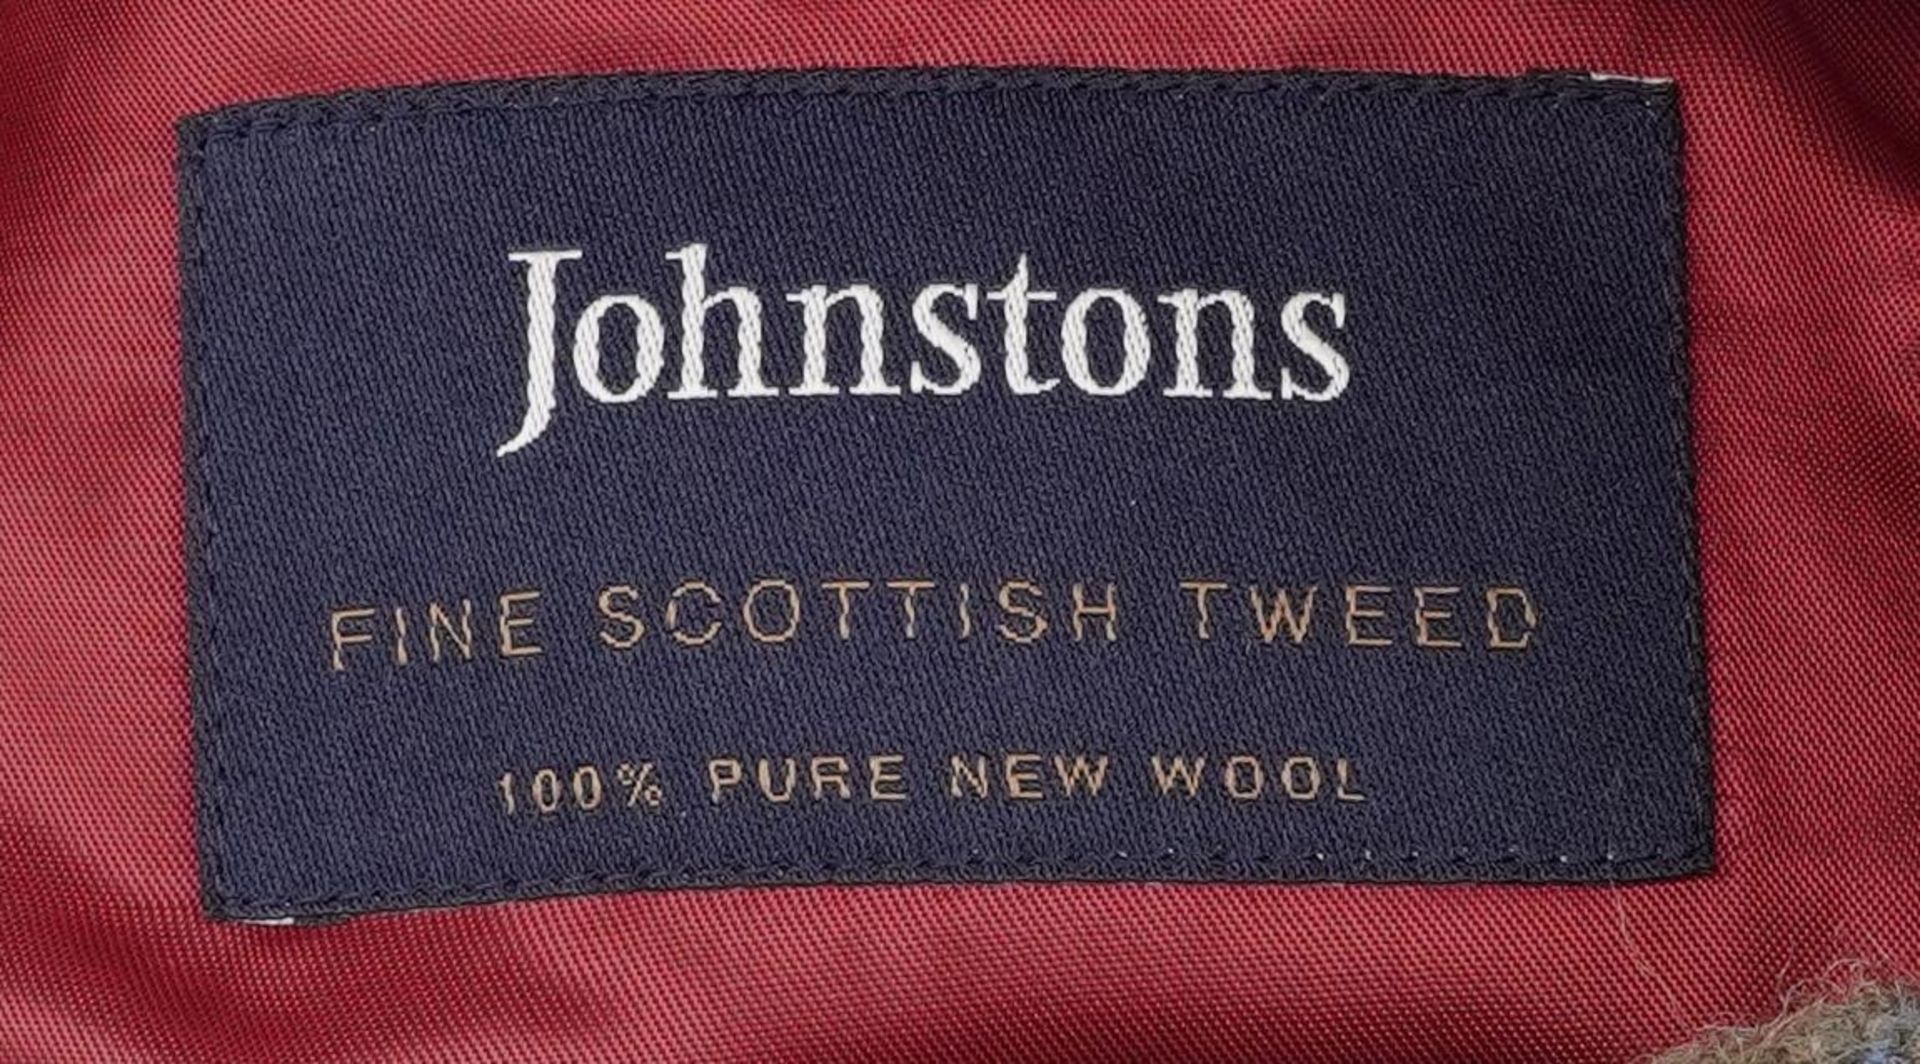 Two gentlemen's Johnston's fine Scottish tweed pure new wool jackets retailed by Brook Taverner, - Bild 3 aus 3